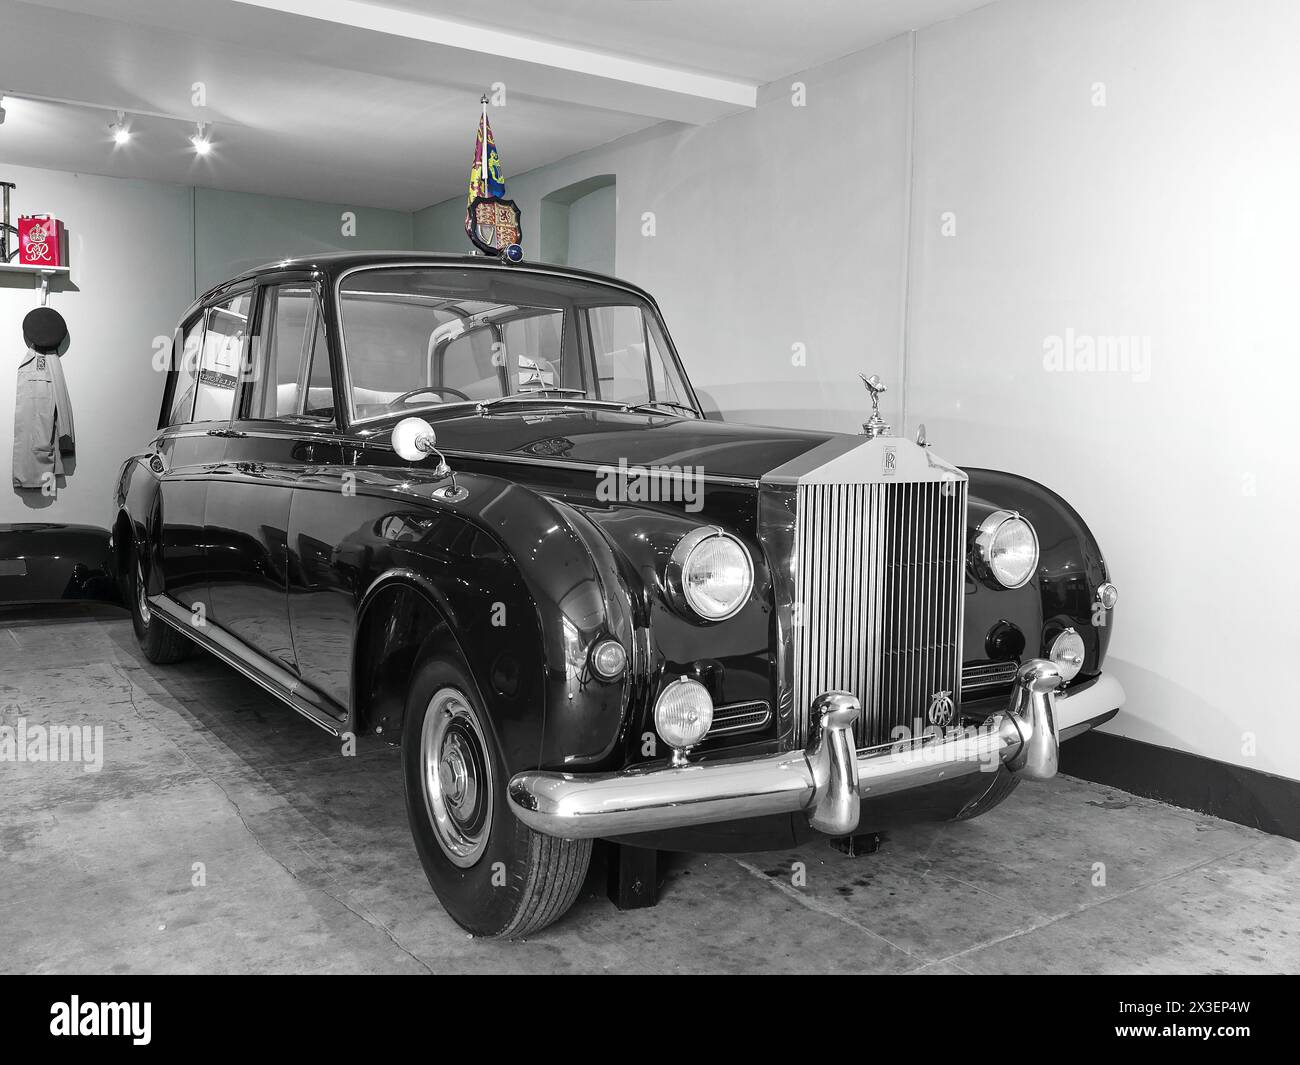 Rolls Royce Phantom, usata dalla regina Elisabetta II tra il 1961 e il 2002, in un garage presso la residenza reale di campagna di re Carlo III Foto Stock